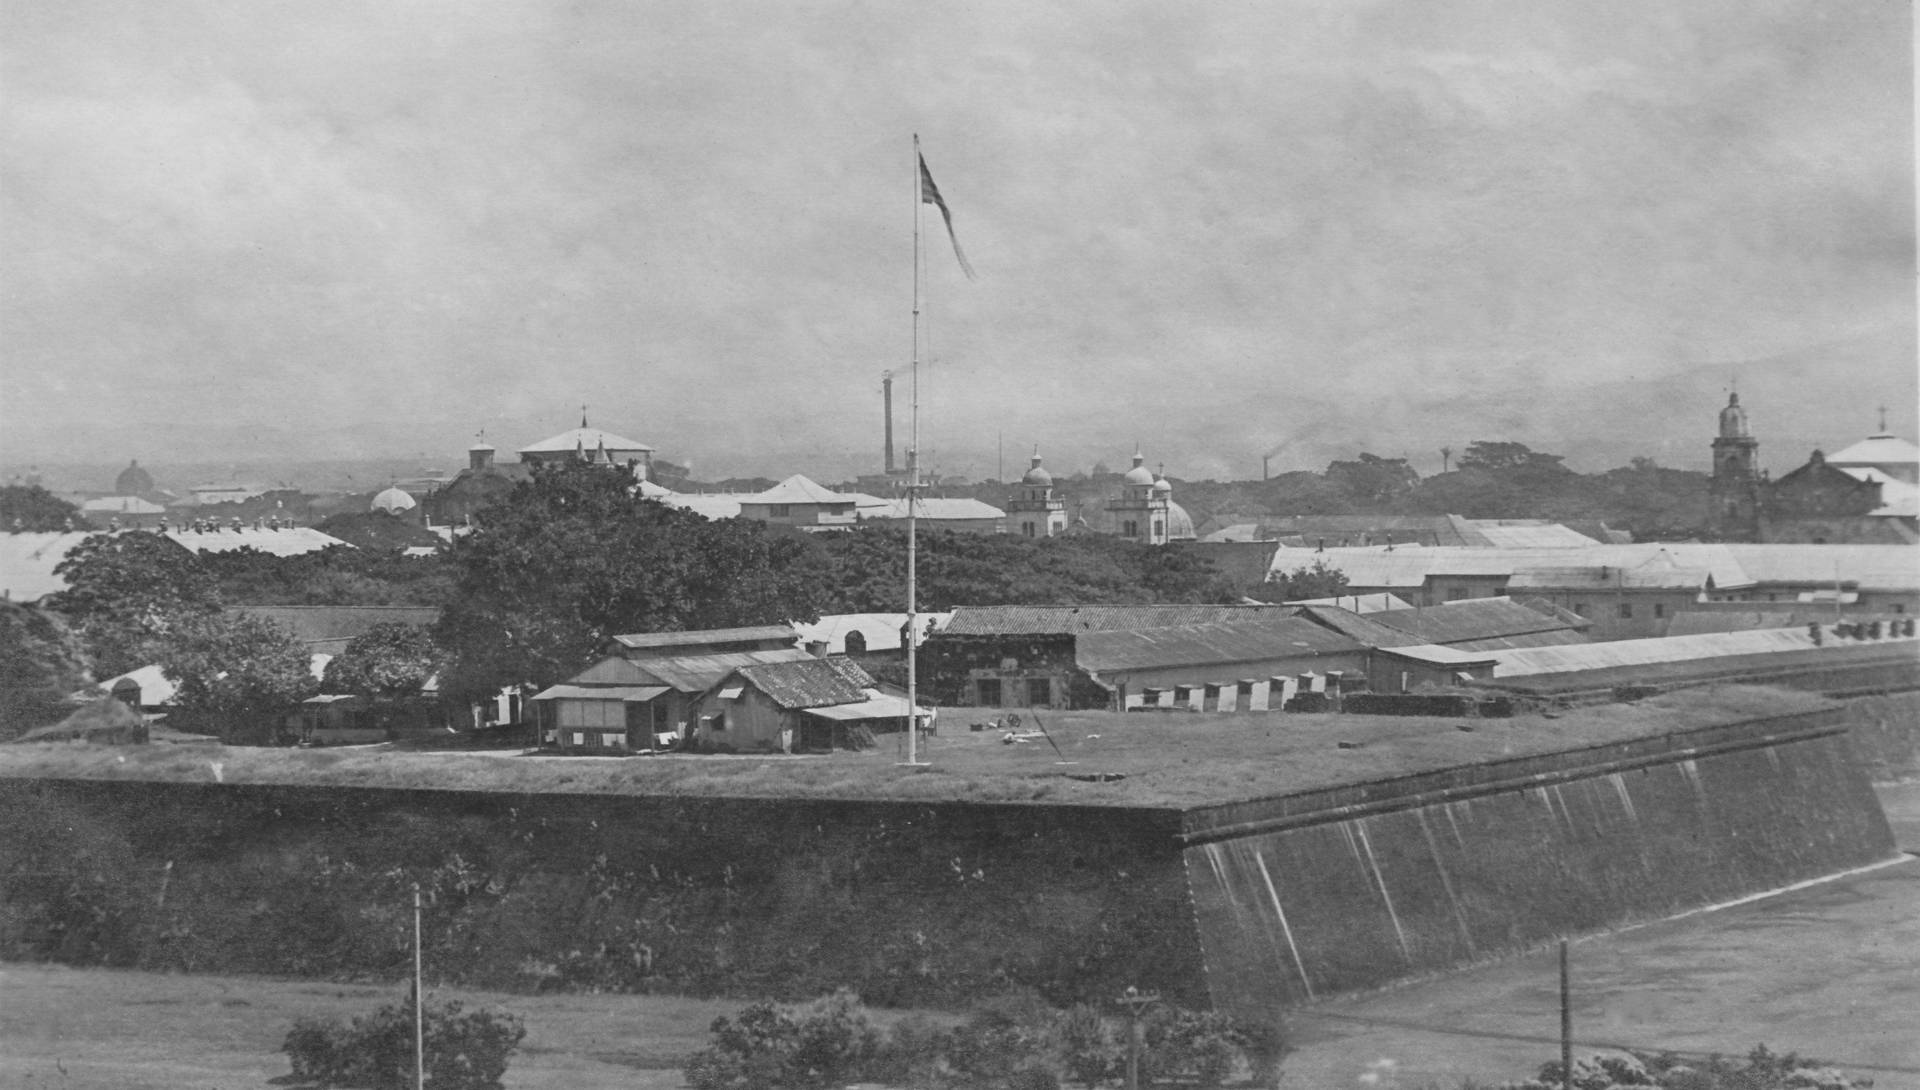 Baluarte San Diego: A Historical Gem In Old Manila